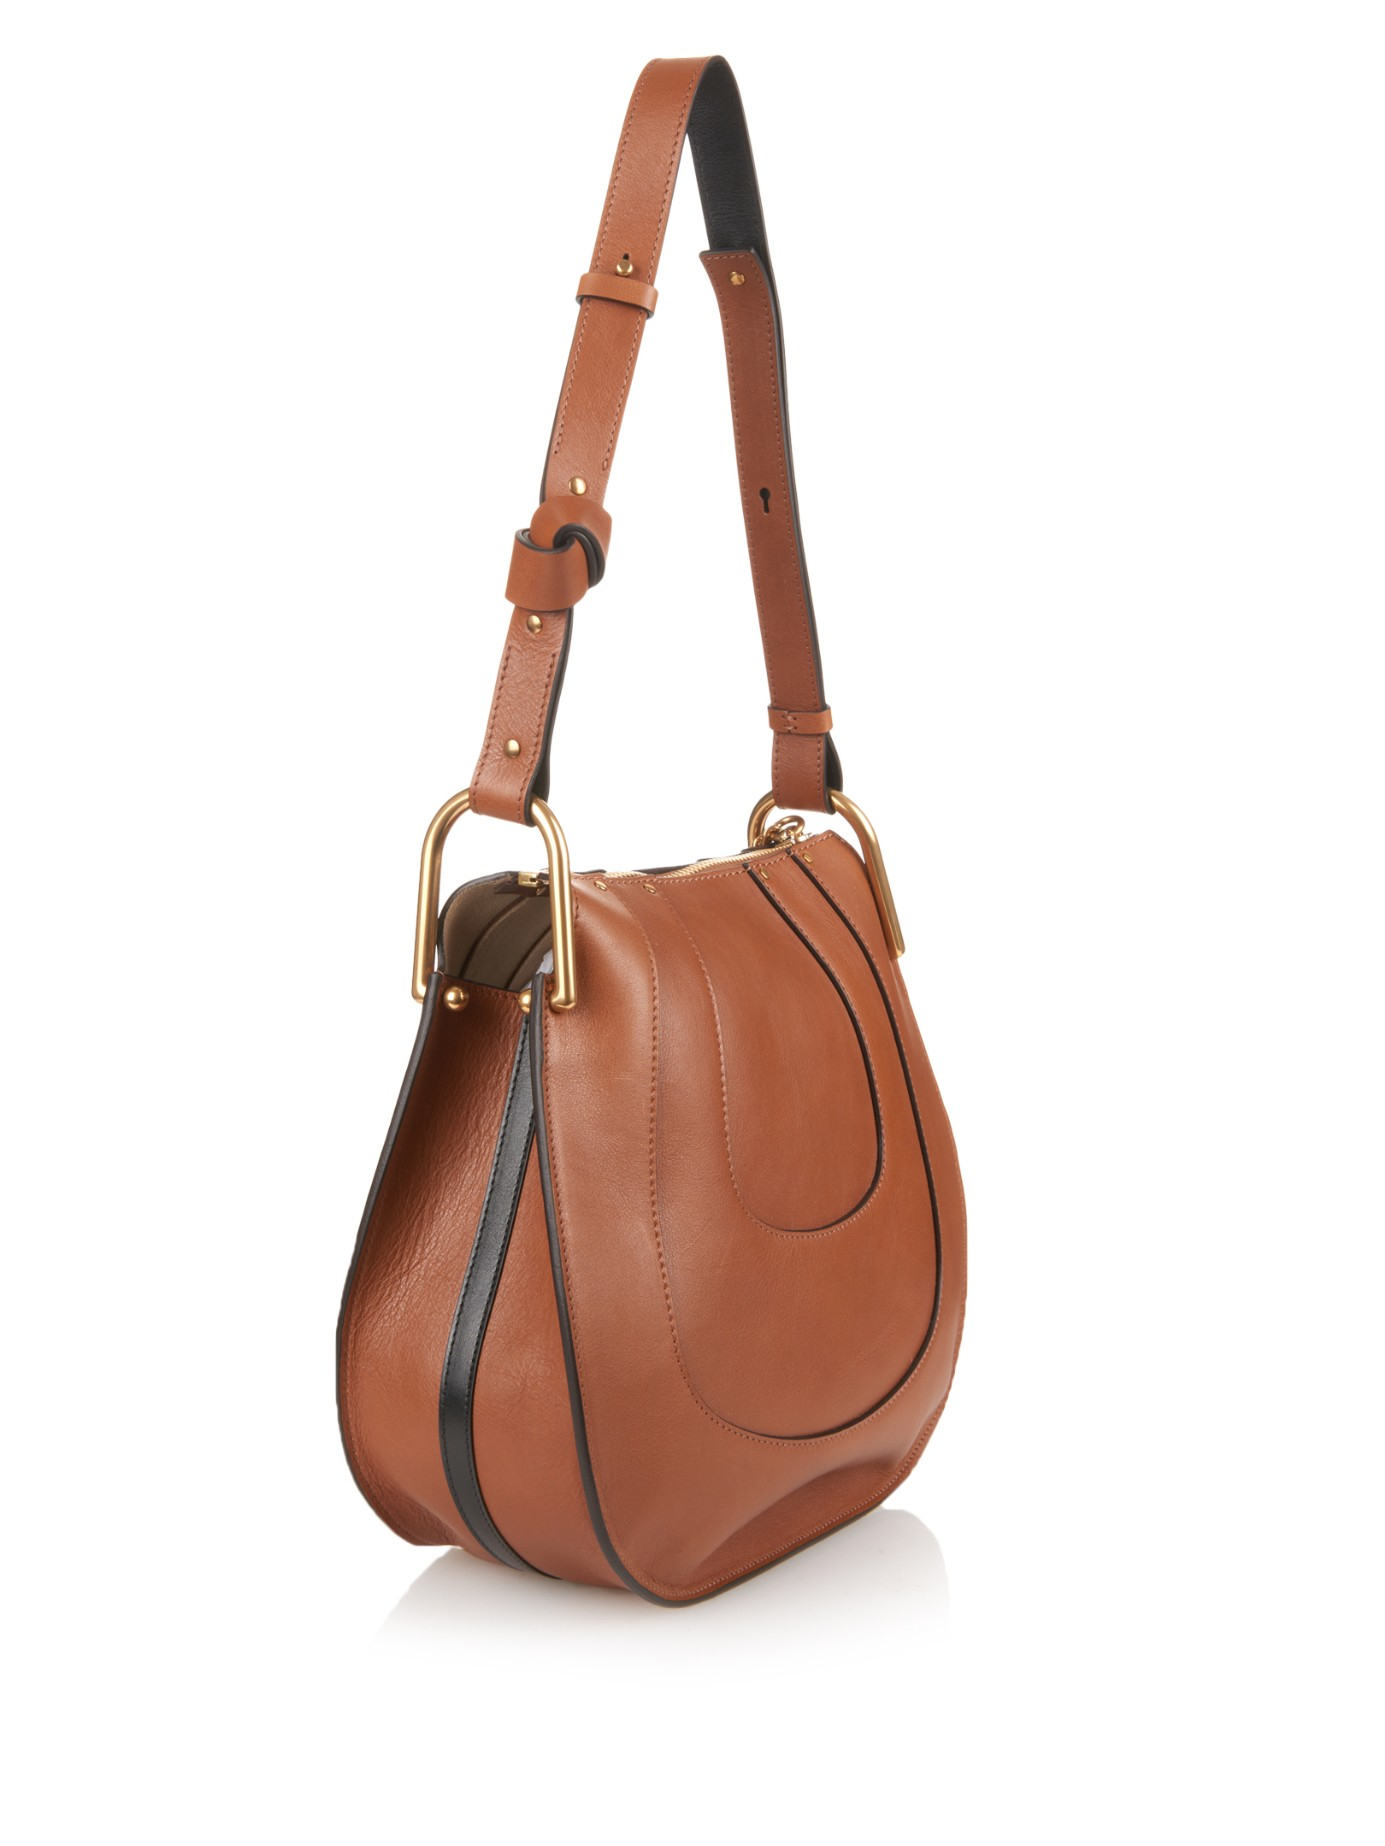 Chloé Hayley Hobo Leather Shoulder Bag in Tan (Brown) - Lyst